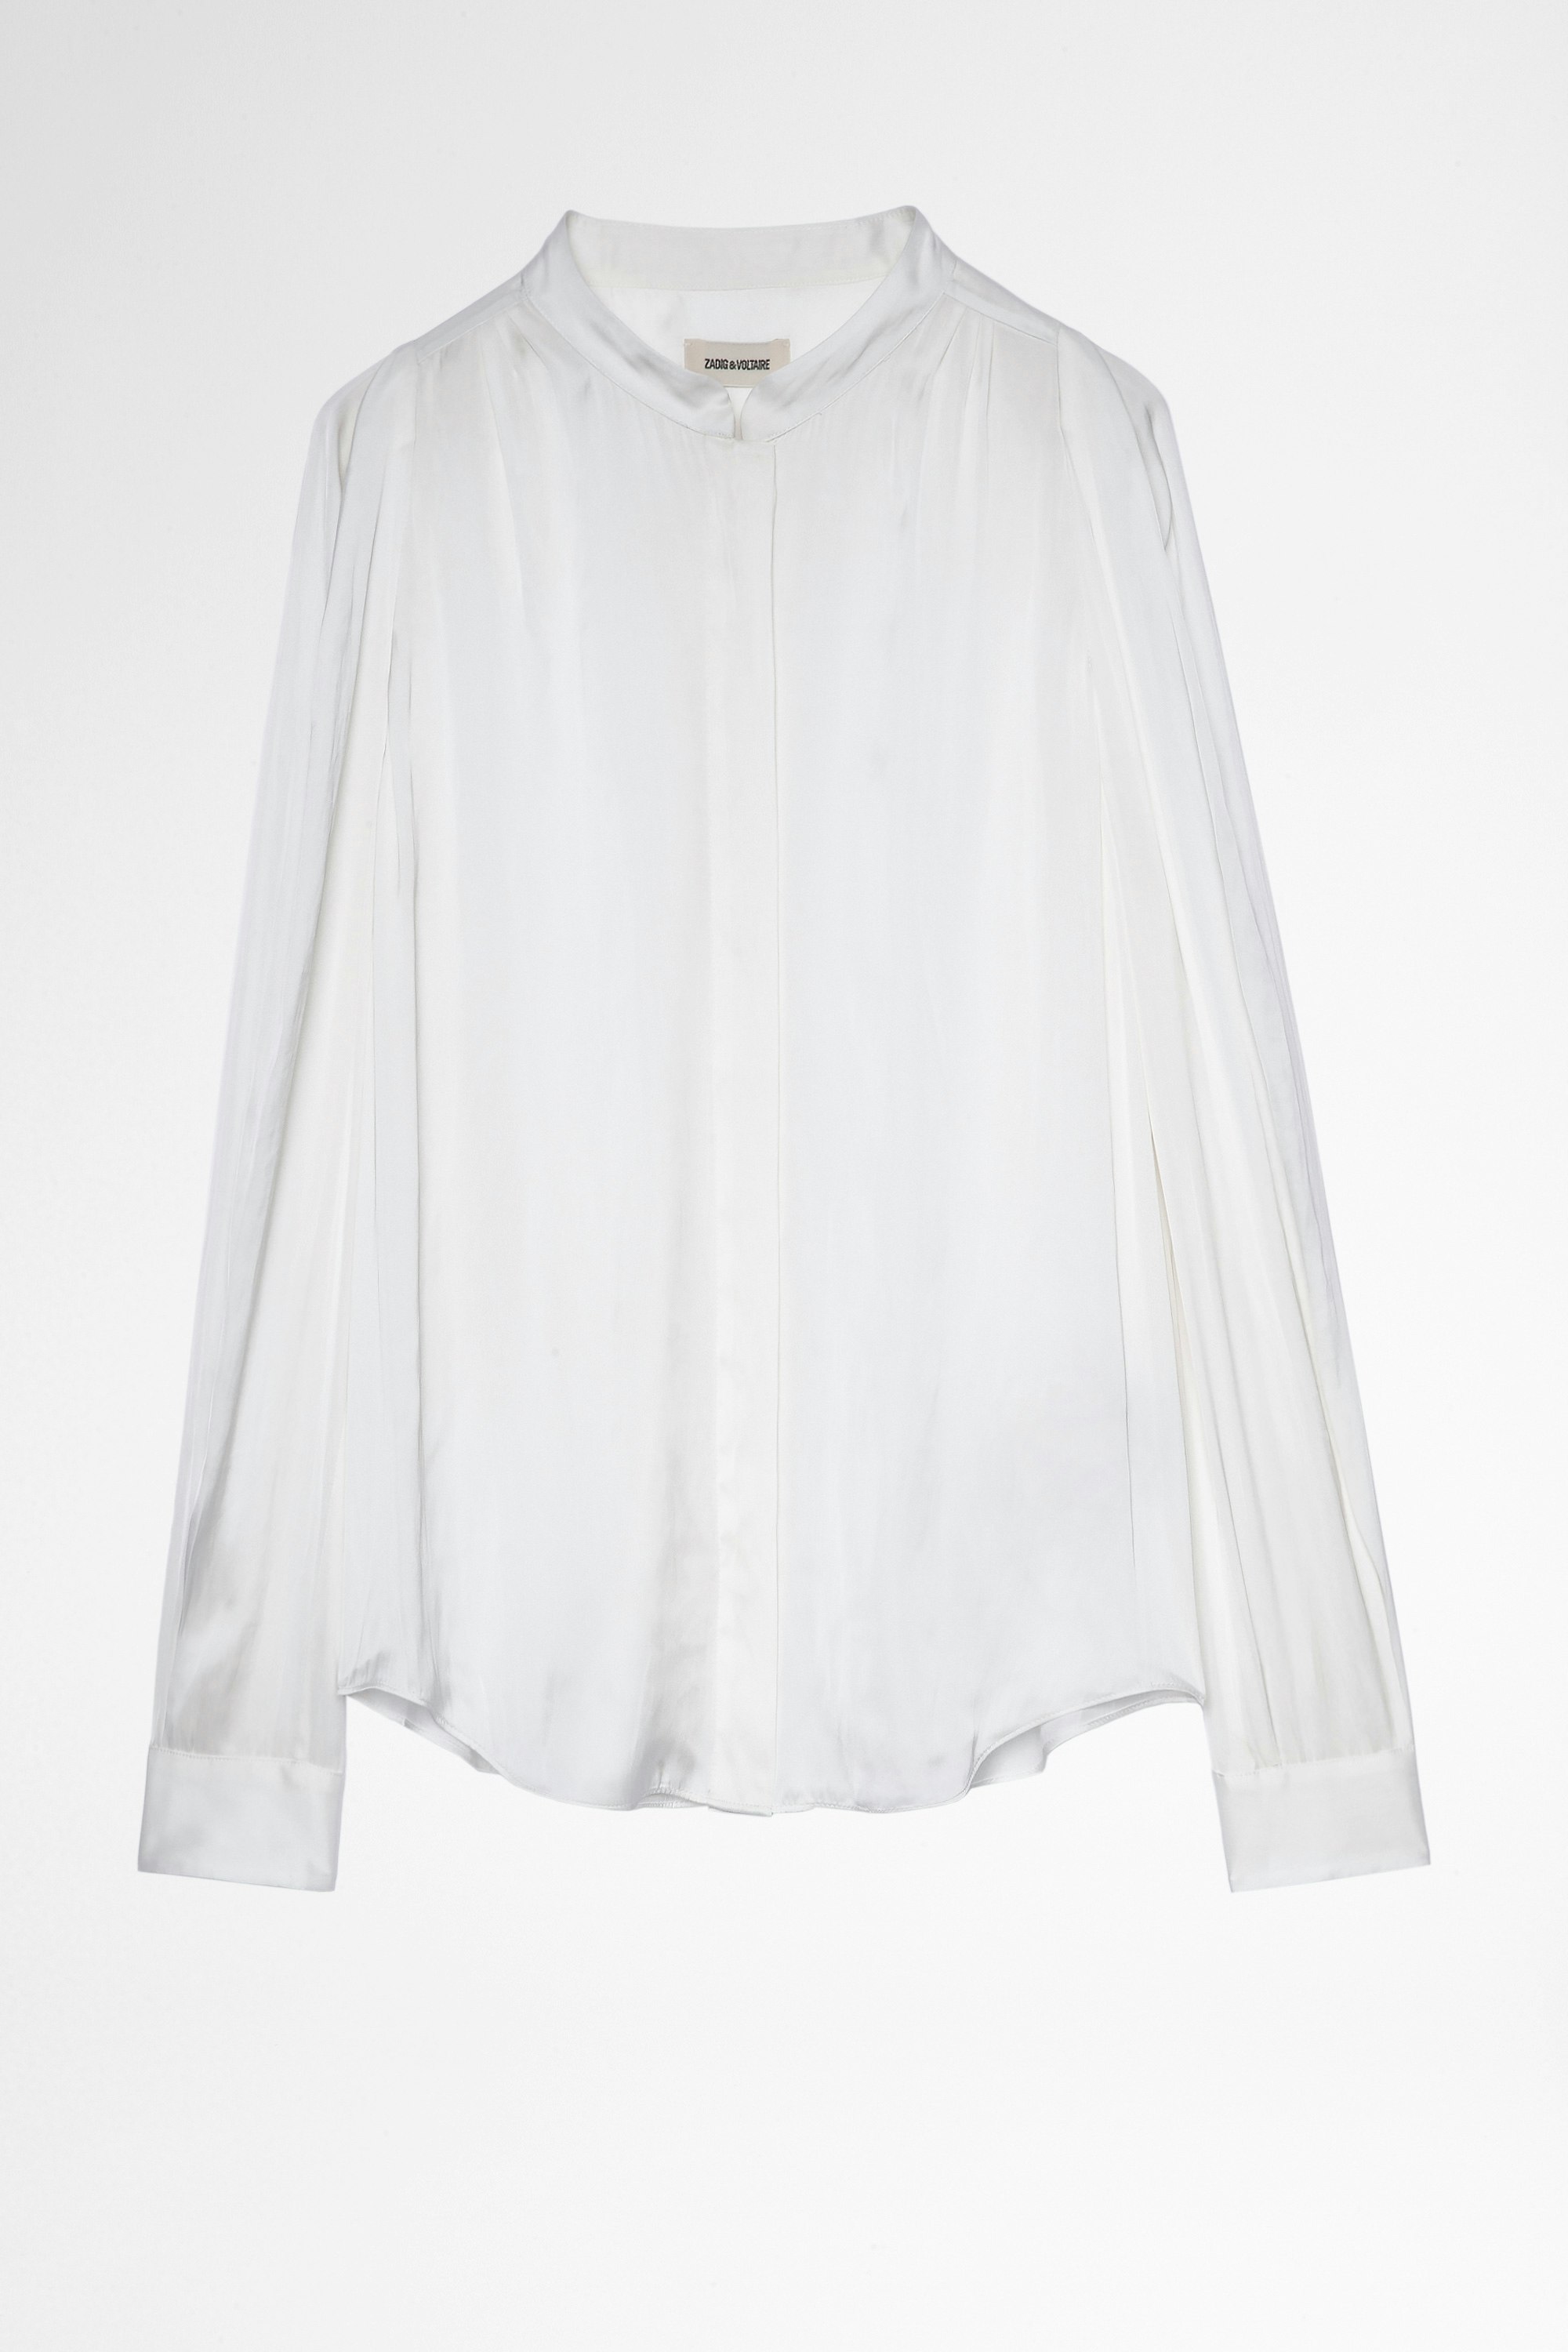 Camisa Touchy  Blusa de satén blanco de manga larga de mujer